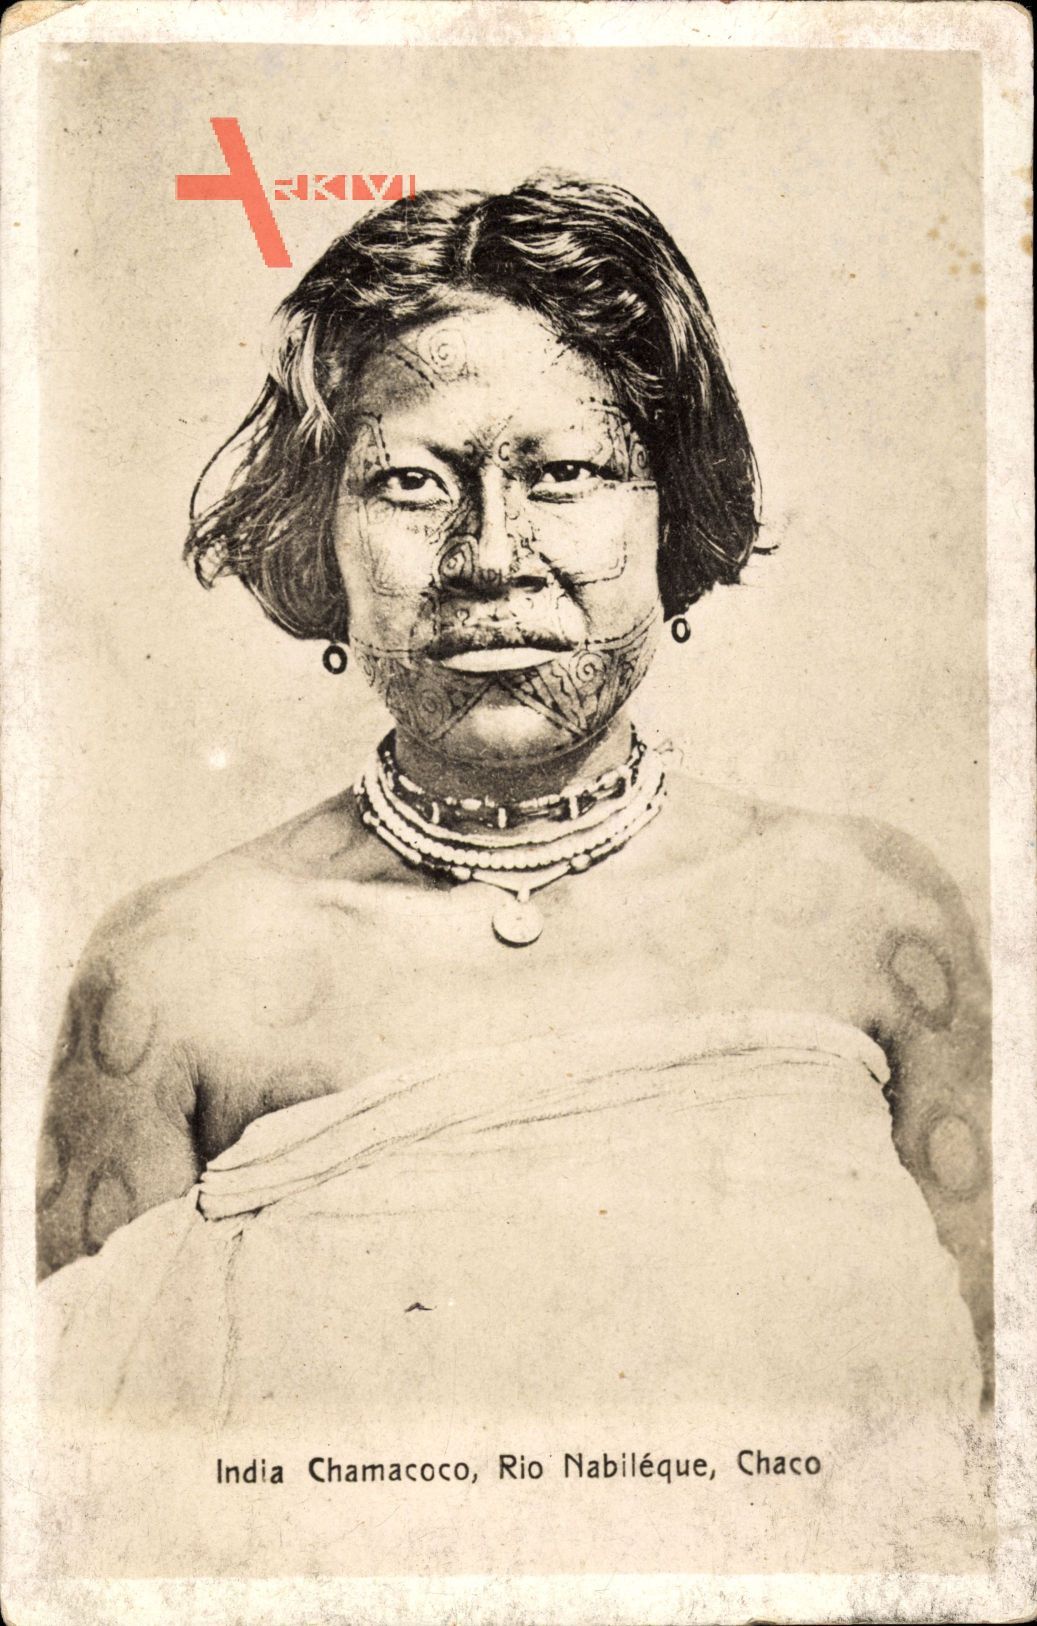 India Chamacoco, Rio Nabiléque, Chaco, Indianer, Gesichtsbemalung